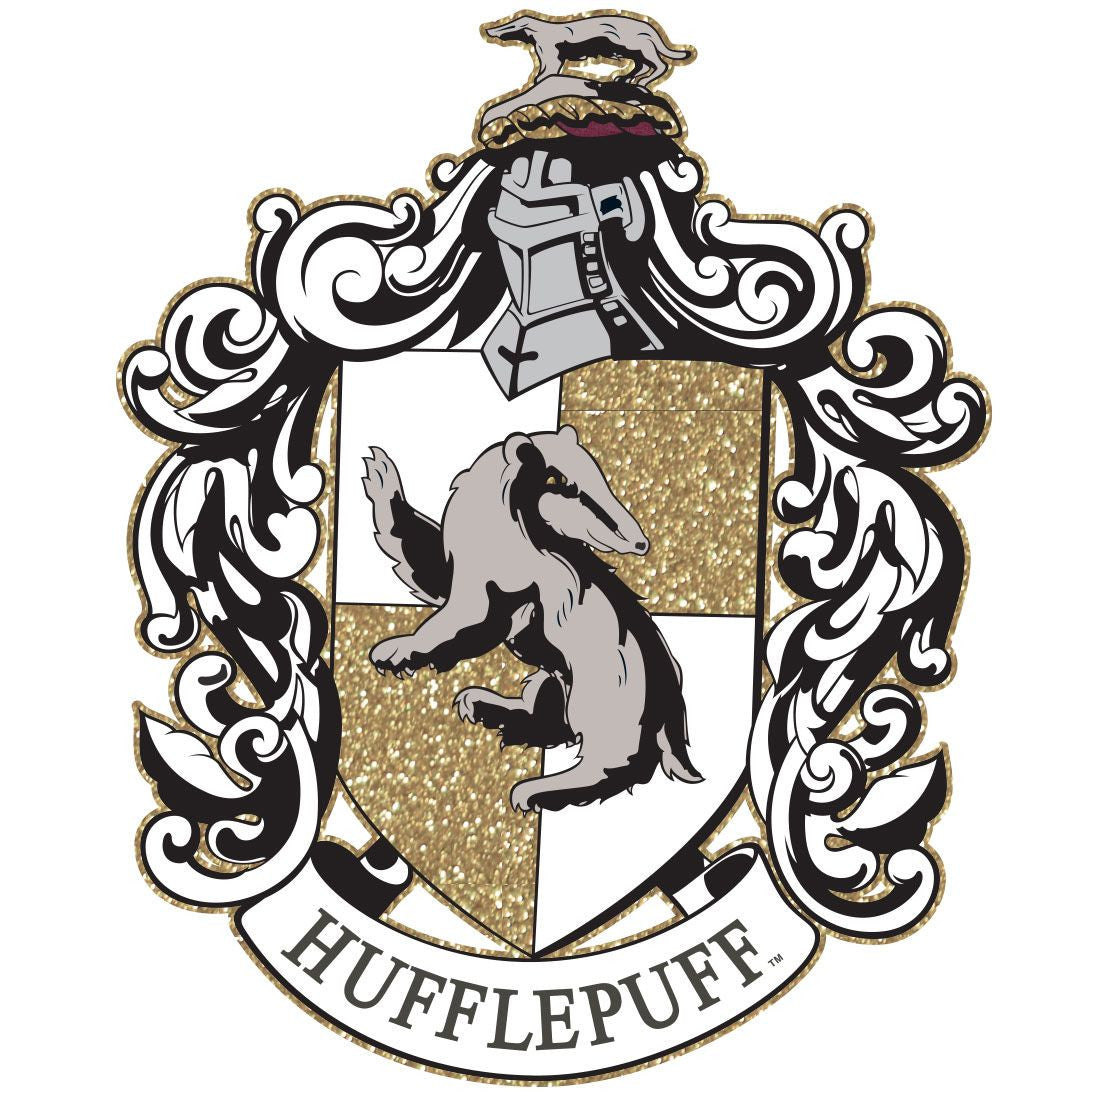 T-shirt Femme Harry Potter - Hufflepuff Gold Glitter